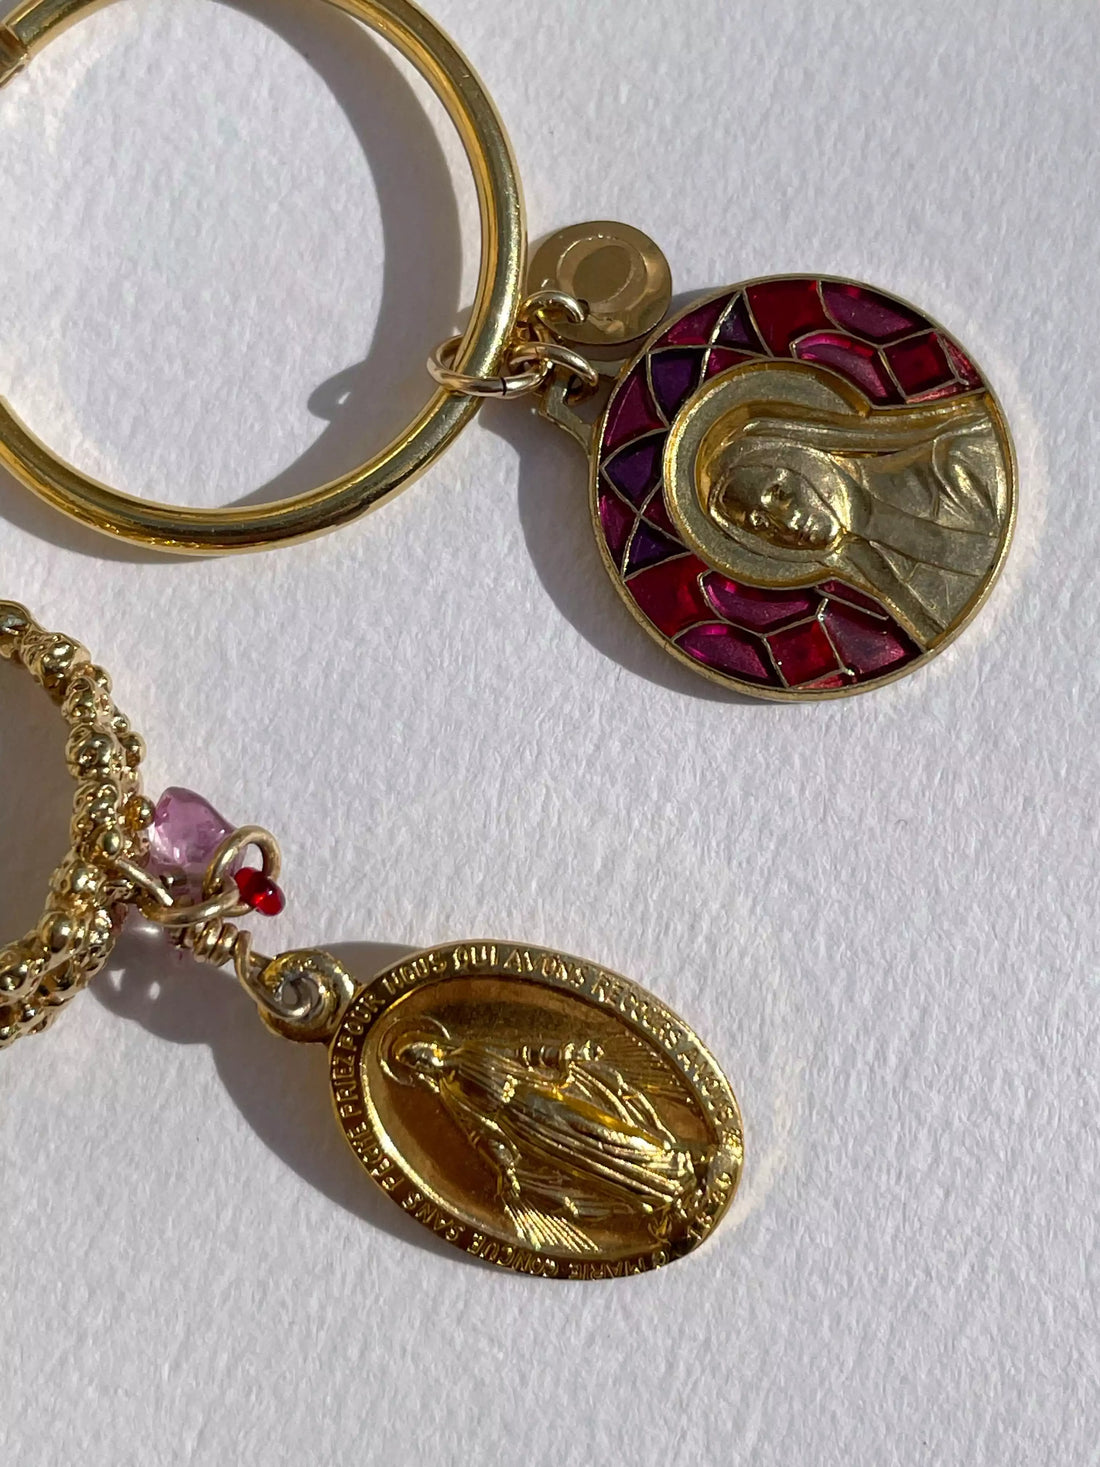 Gros plan des détails des médaillons qui sont suspendus aux créoles. L'un est un médaillon religieux avec un motif de vitrail rouge, et l'autre est un médaillon avec une religieuse debout entièrement plaqué or.